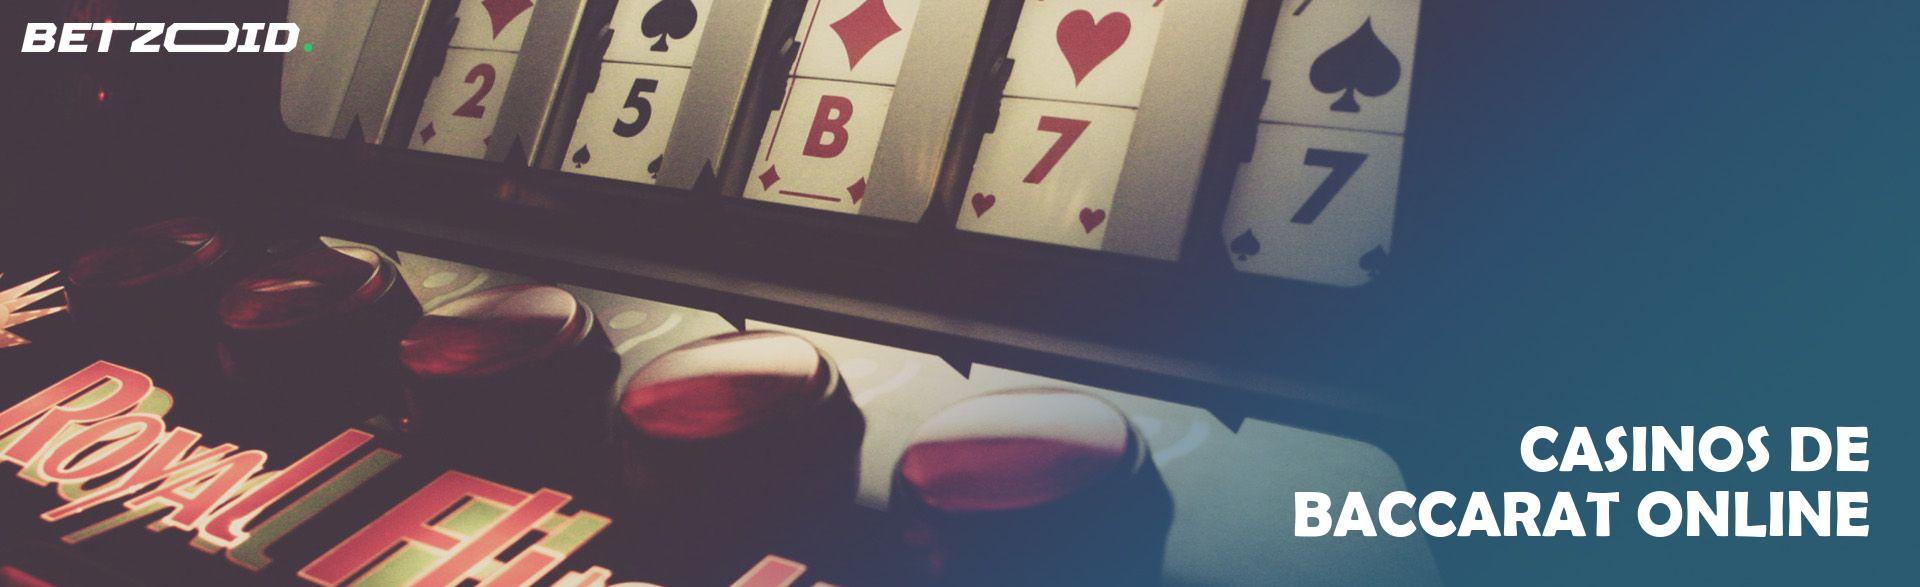 Casinos de Baccarat Online.